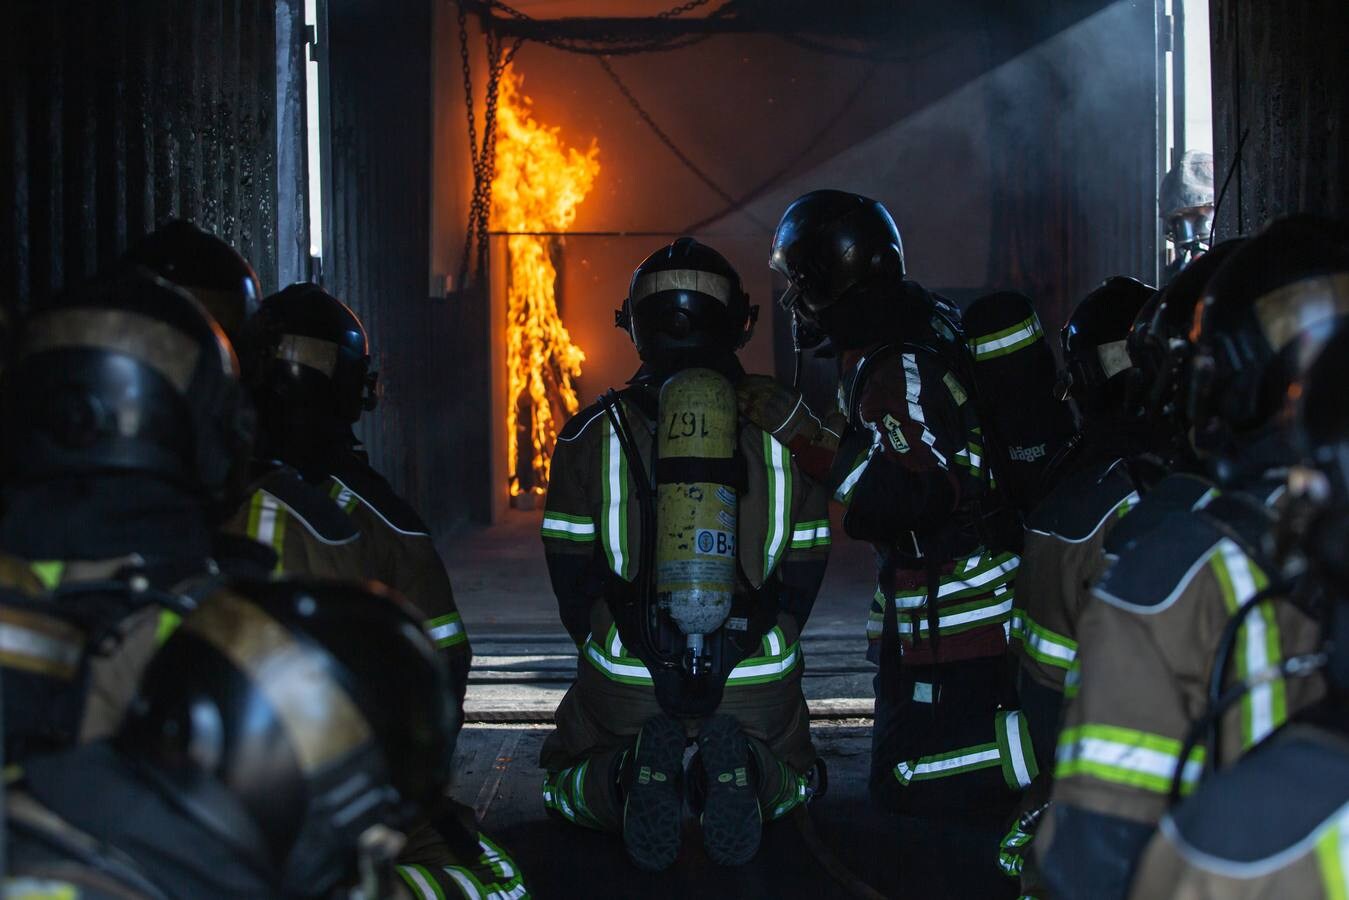 Los bomberos se enfrentan a su enemigo en Sevilla